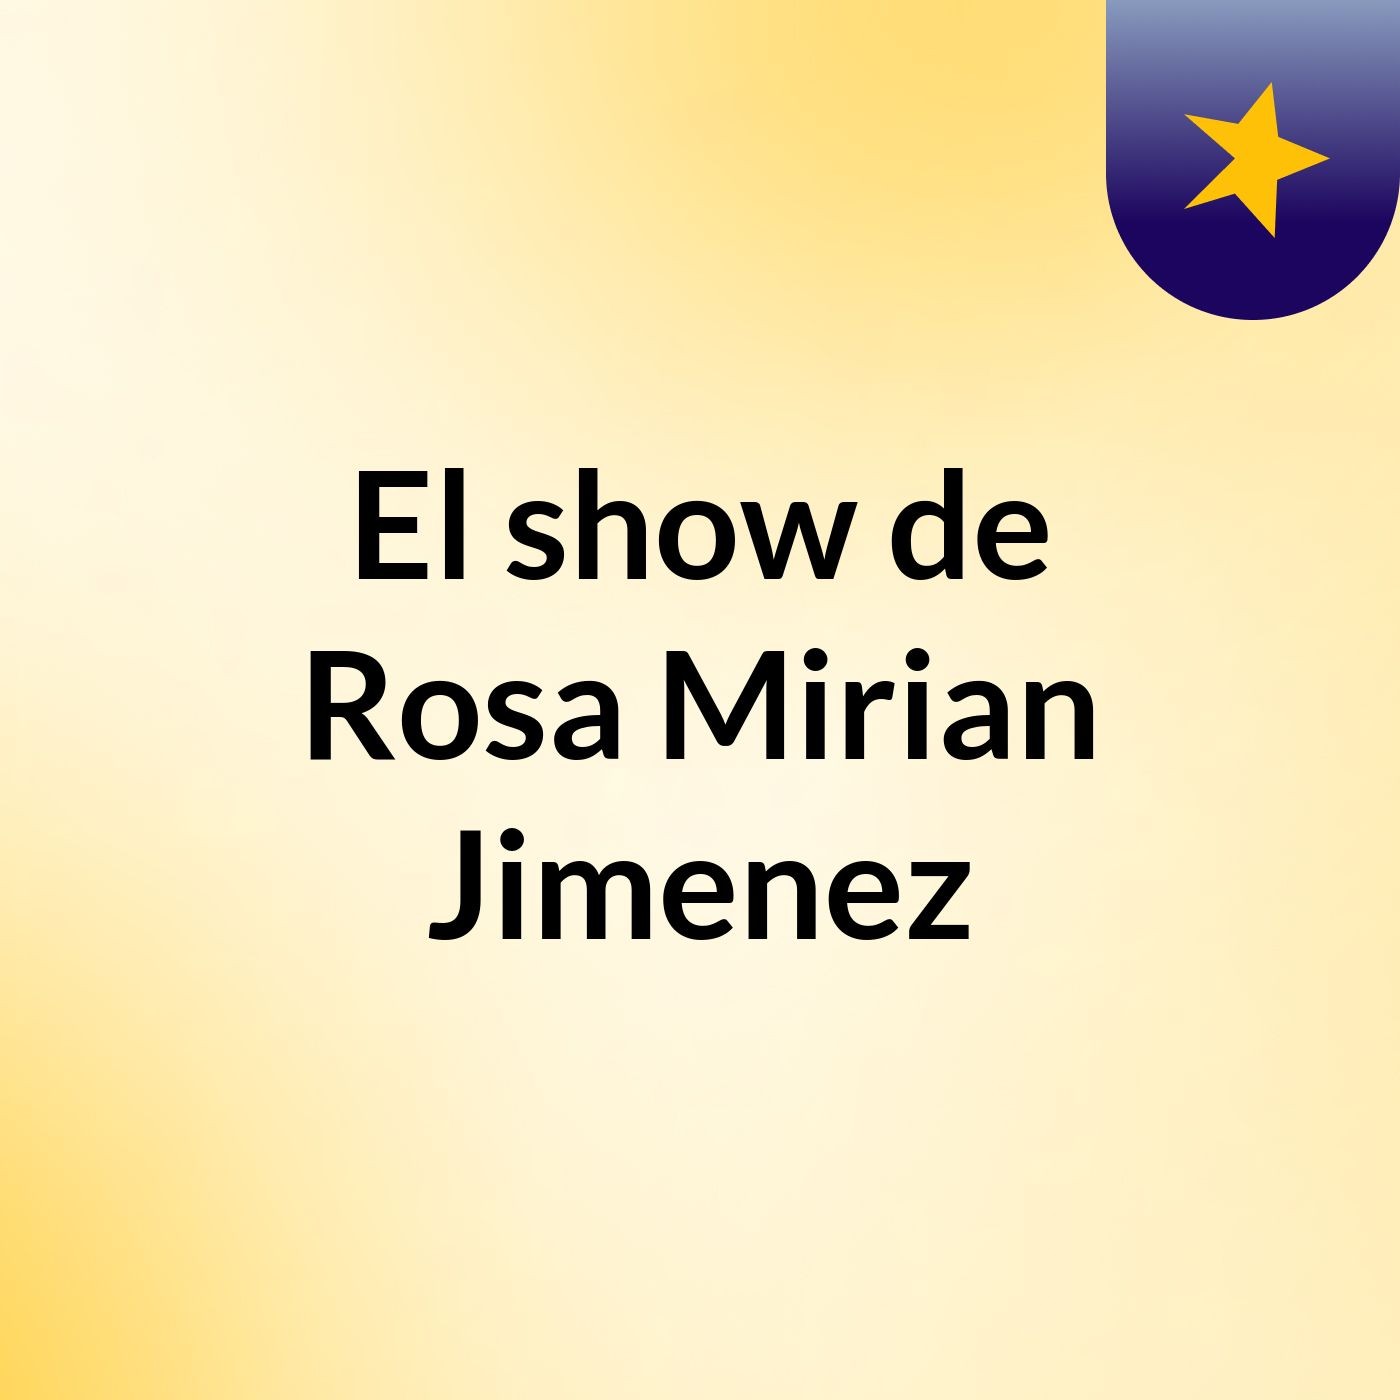 El show de Rosa Mirian Jimenez